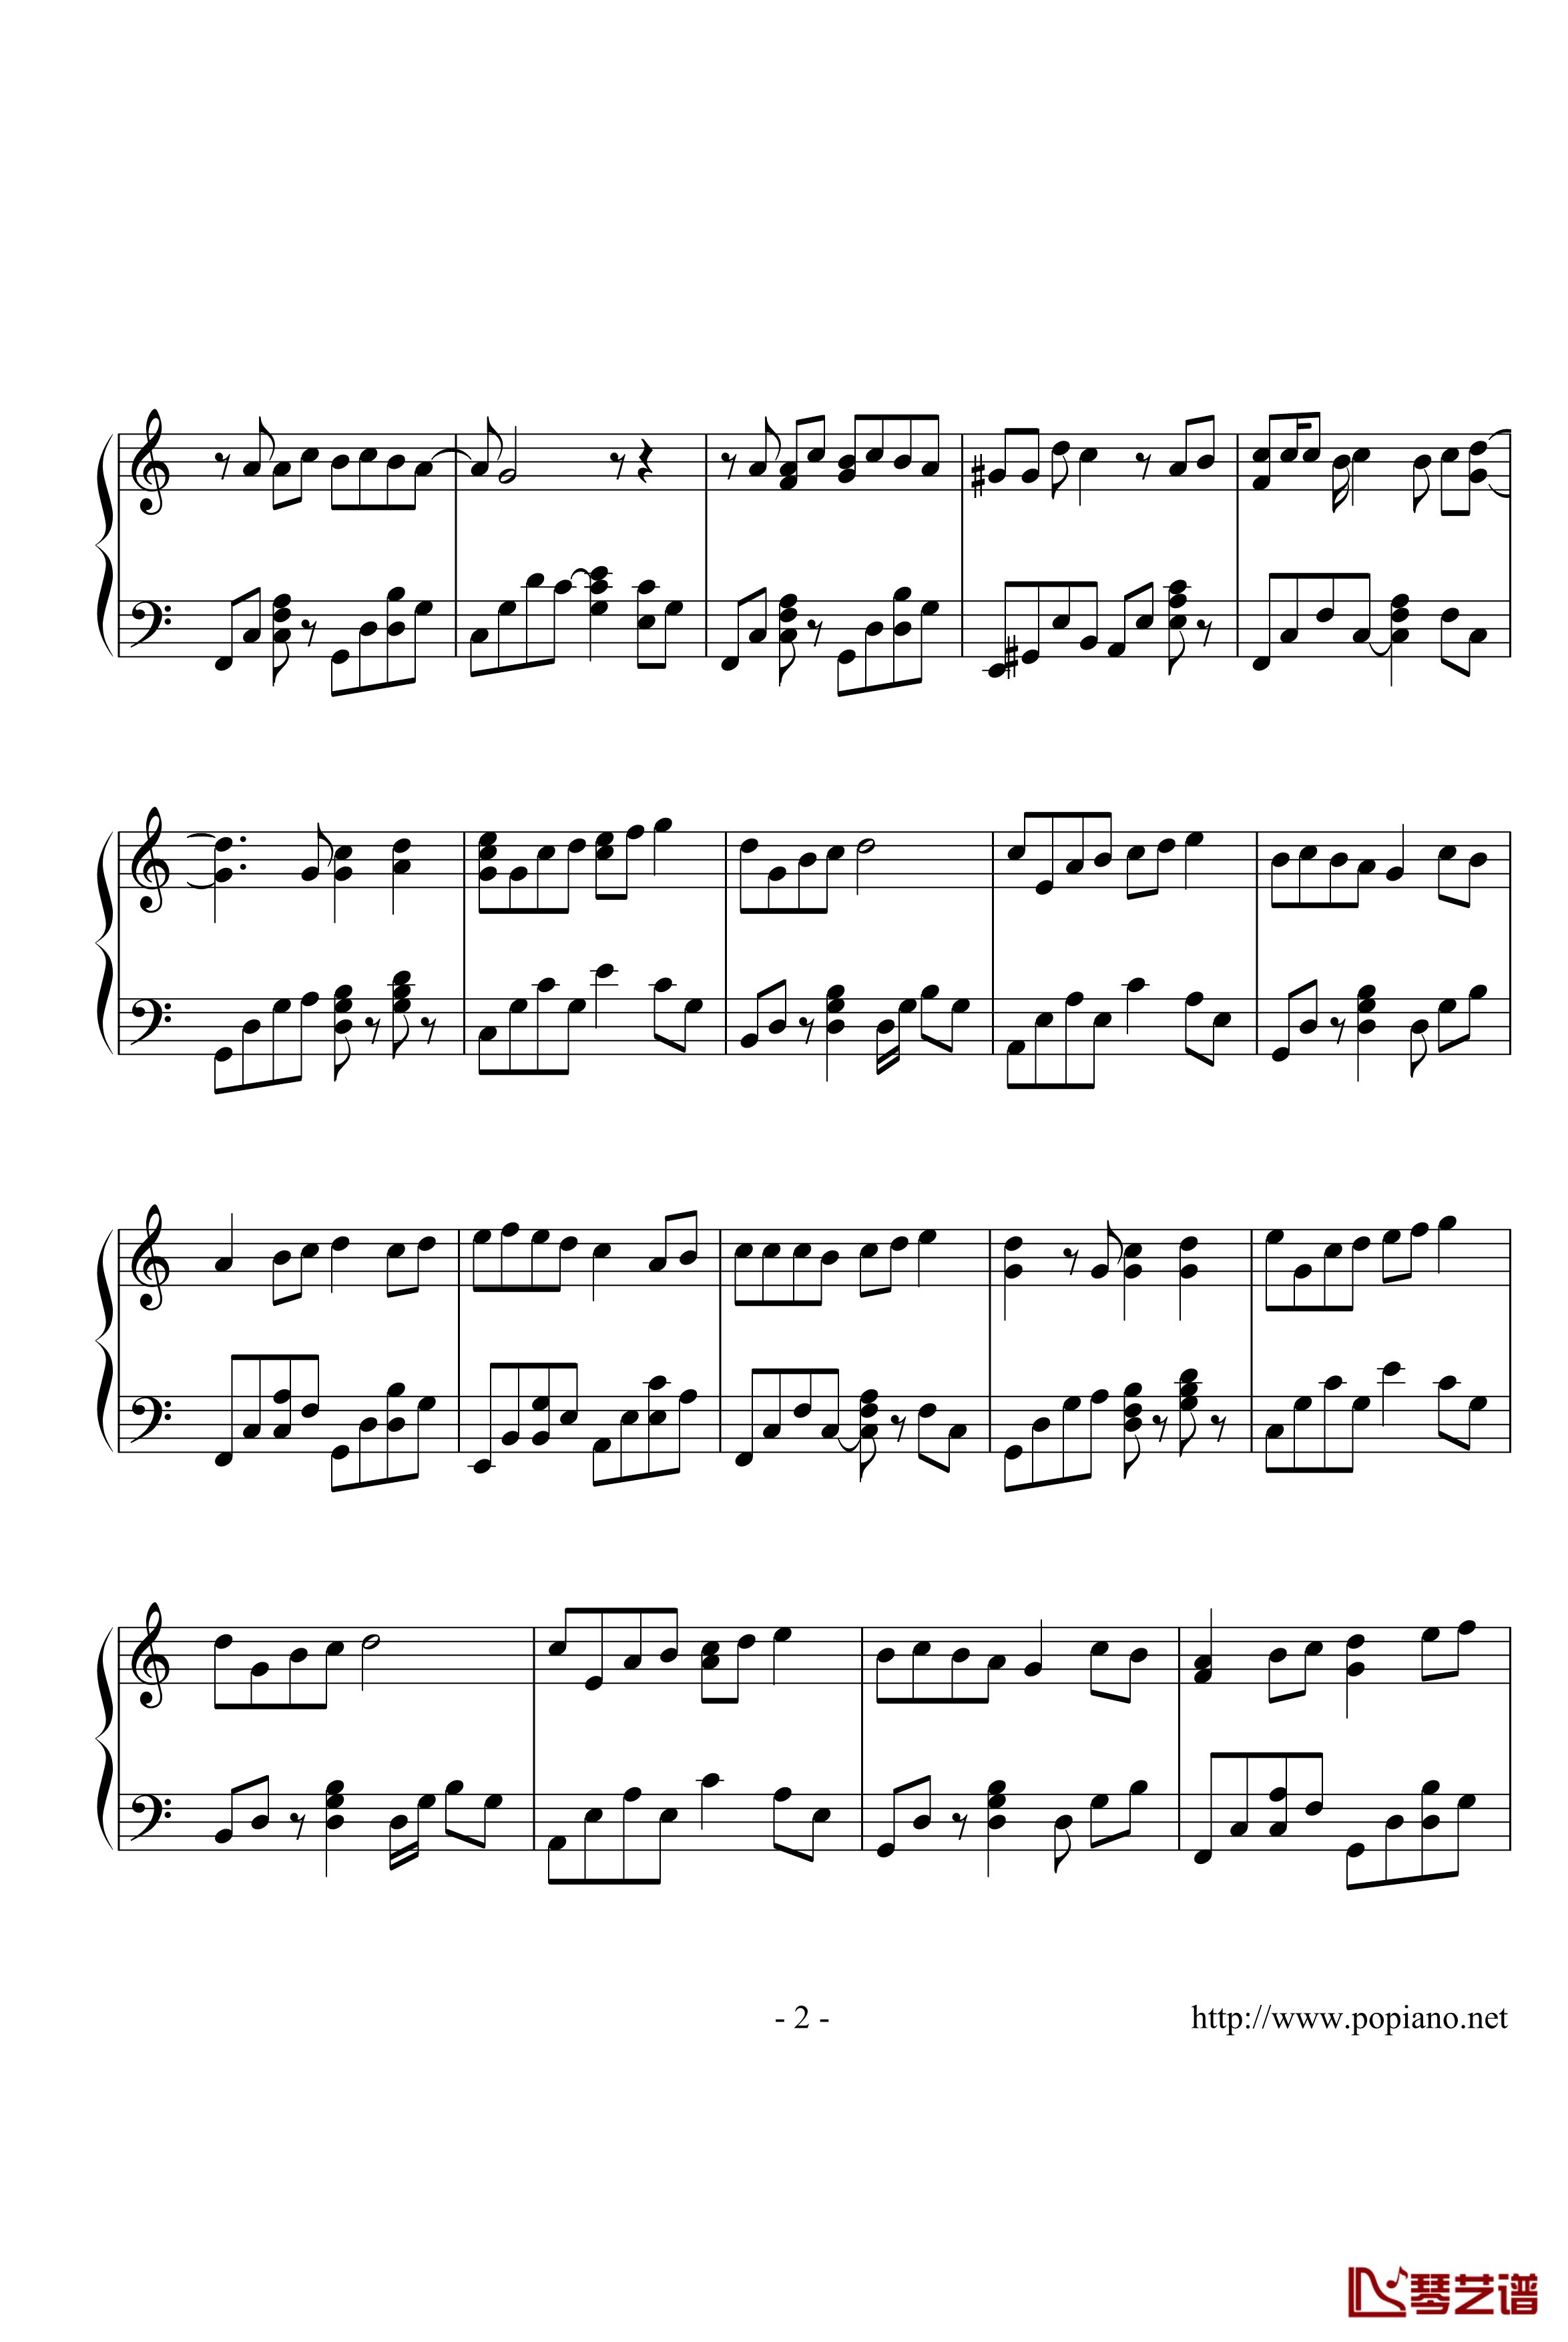 棉花糖钢琴谱-演奏版-至上励合2